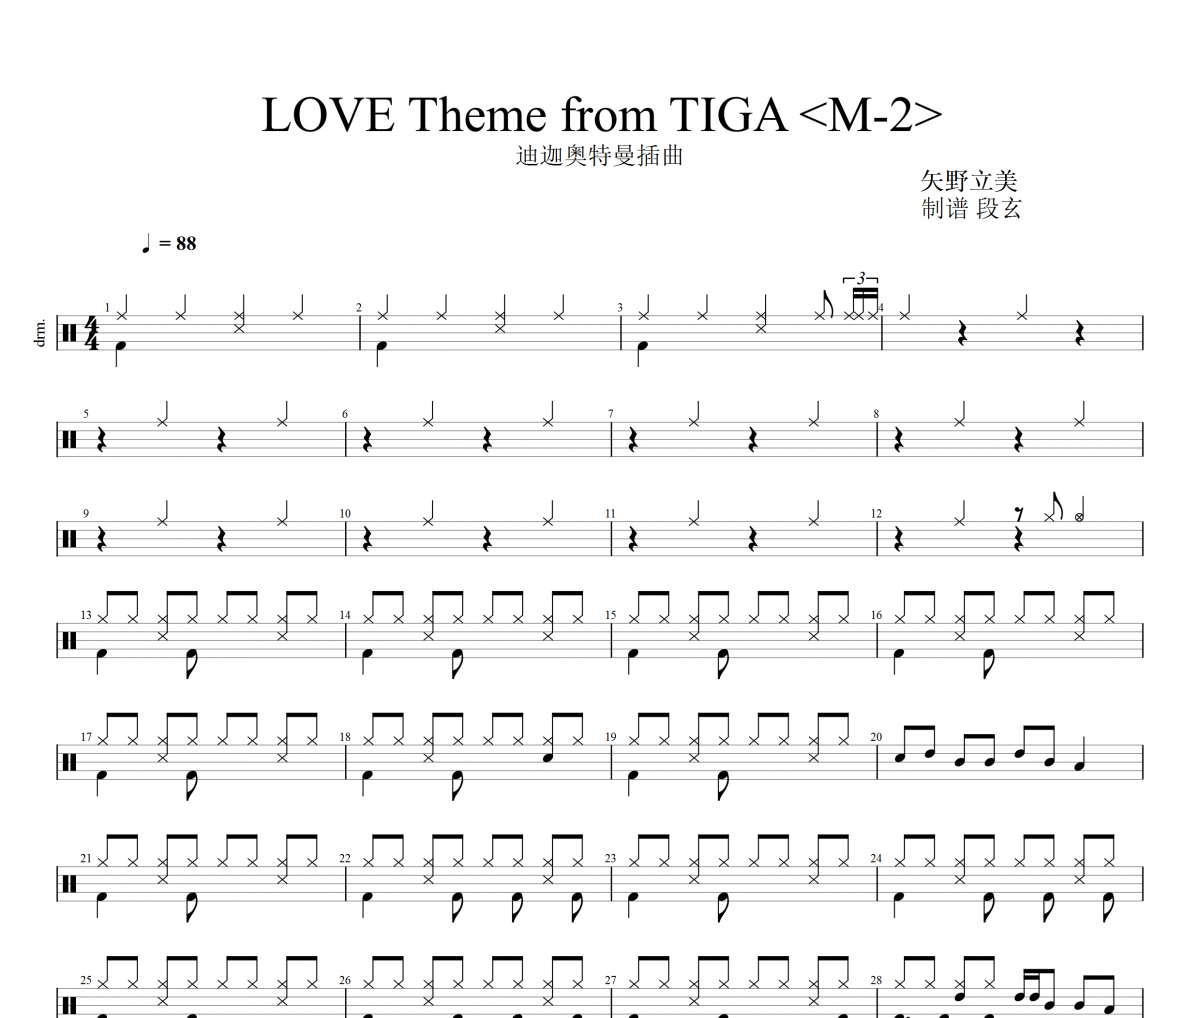 矢野立美-LOVE Theme from TIGA ＜M-2＞迪迦奥特曼插曲架子鼓谱